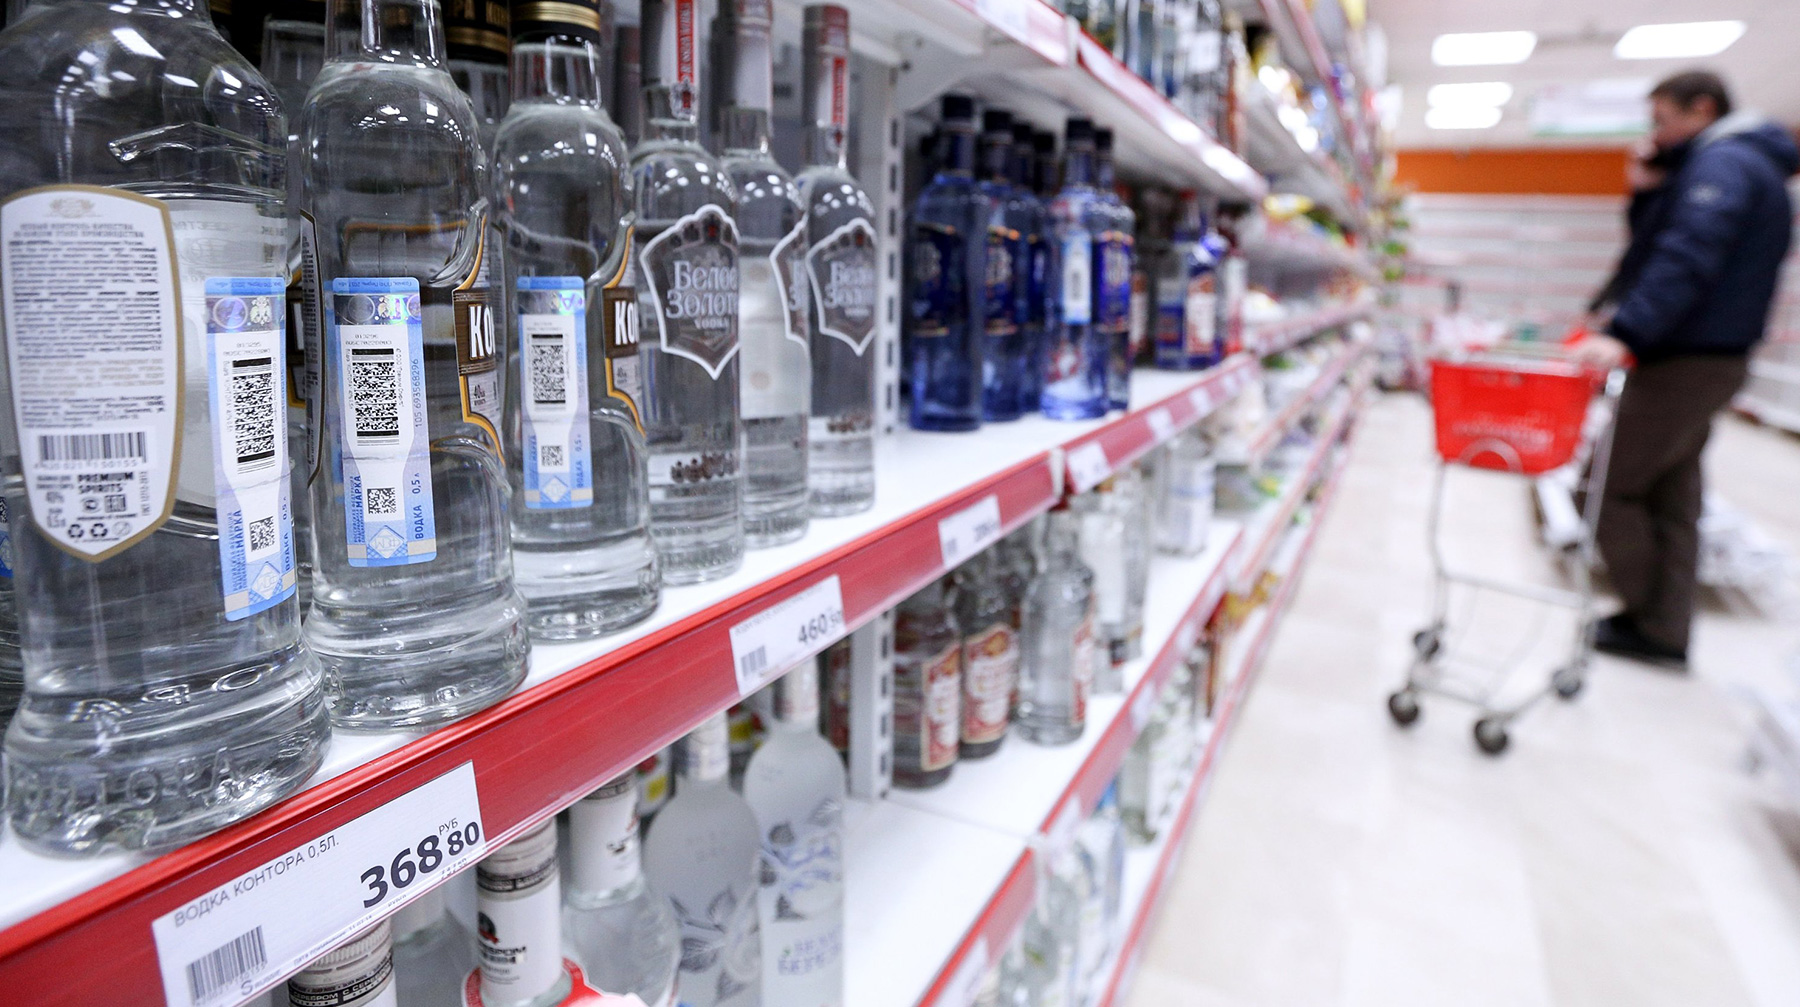 Выпивку необходимо перенести в отдельные алкомаркеты или изолированные помещения, говорится в инициативе Фото: © Агенство Москва / Зыков Кирилл